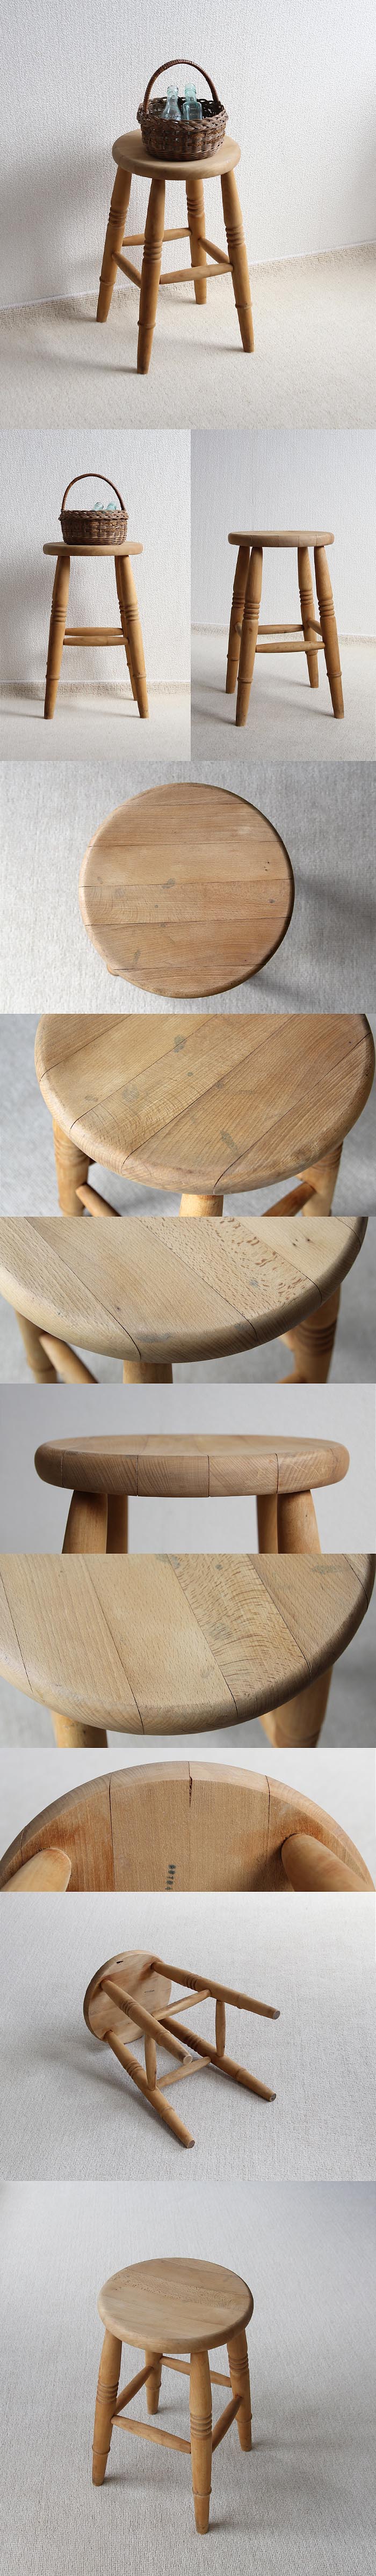 イギリス ヴィンテージ スツール 丸椅子 木製 カントリー アンティーク 家具「花台にも」V-676